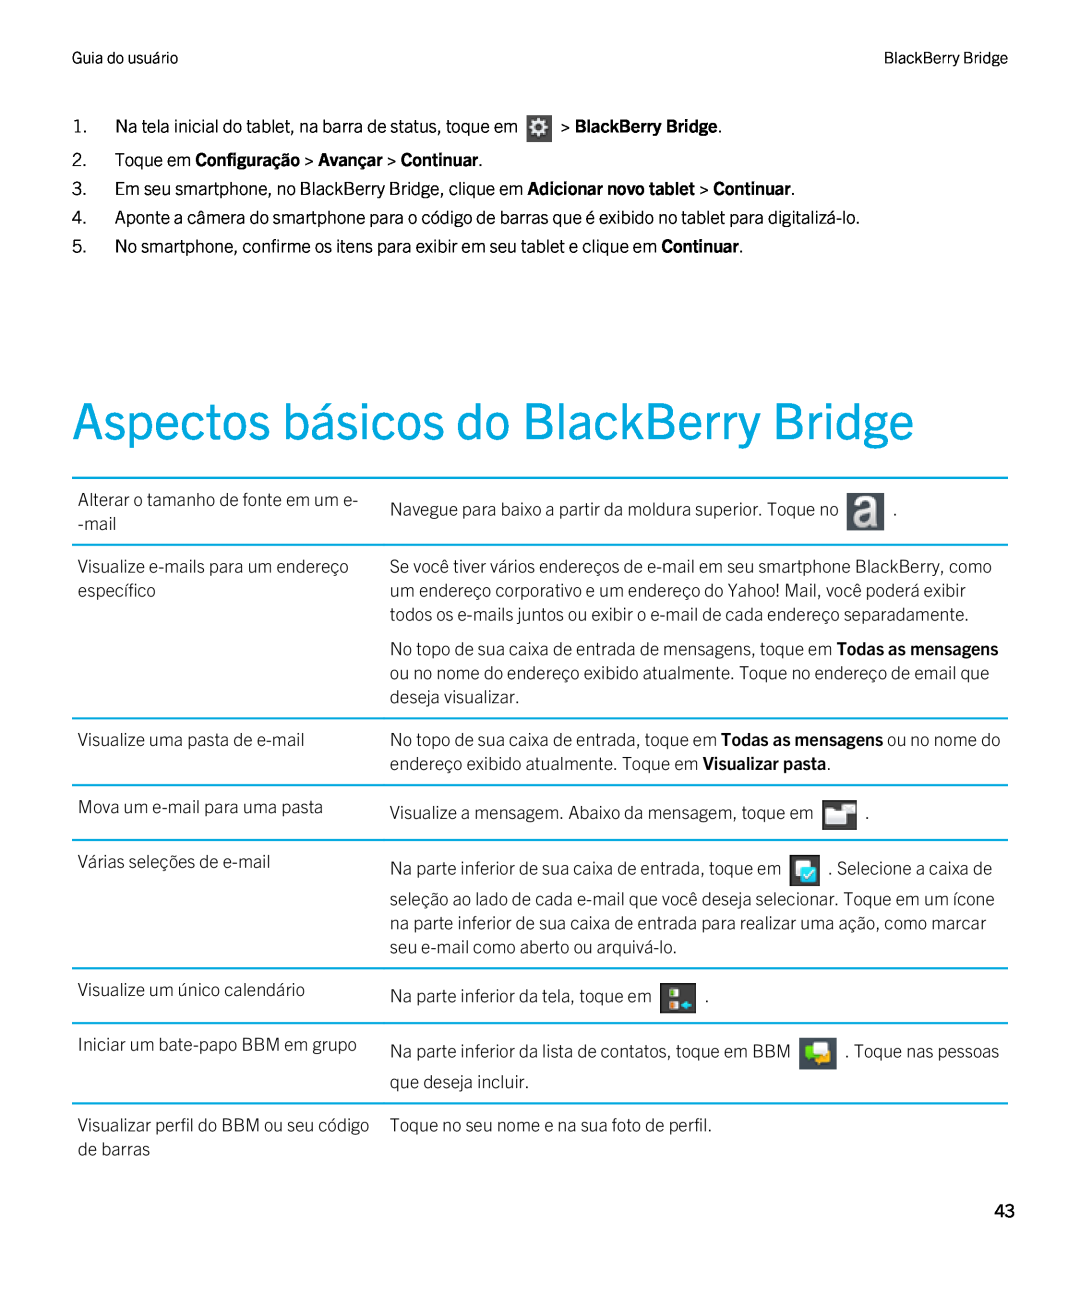 Blackberry 2.0.1 manual Aspectos básicos do BlackBerry Bridge, Toque em Configuração Avançar Continuar 